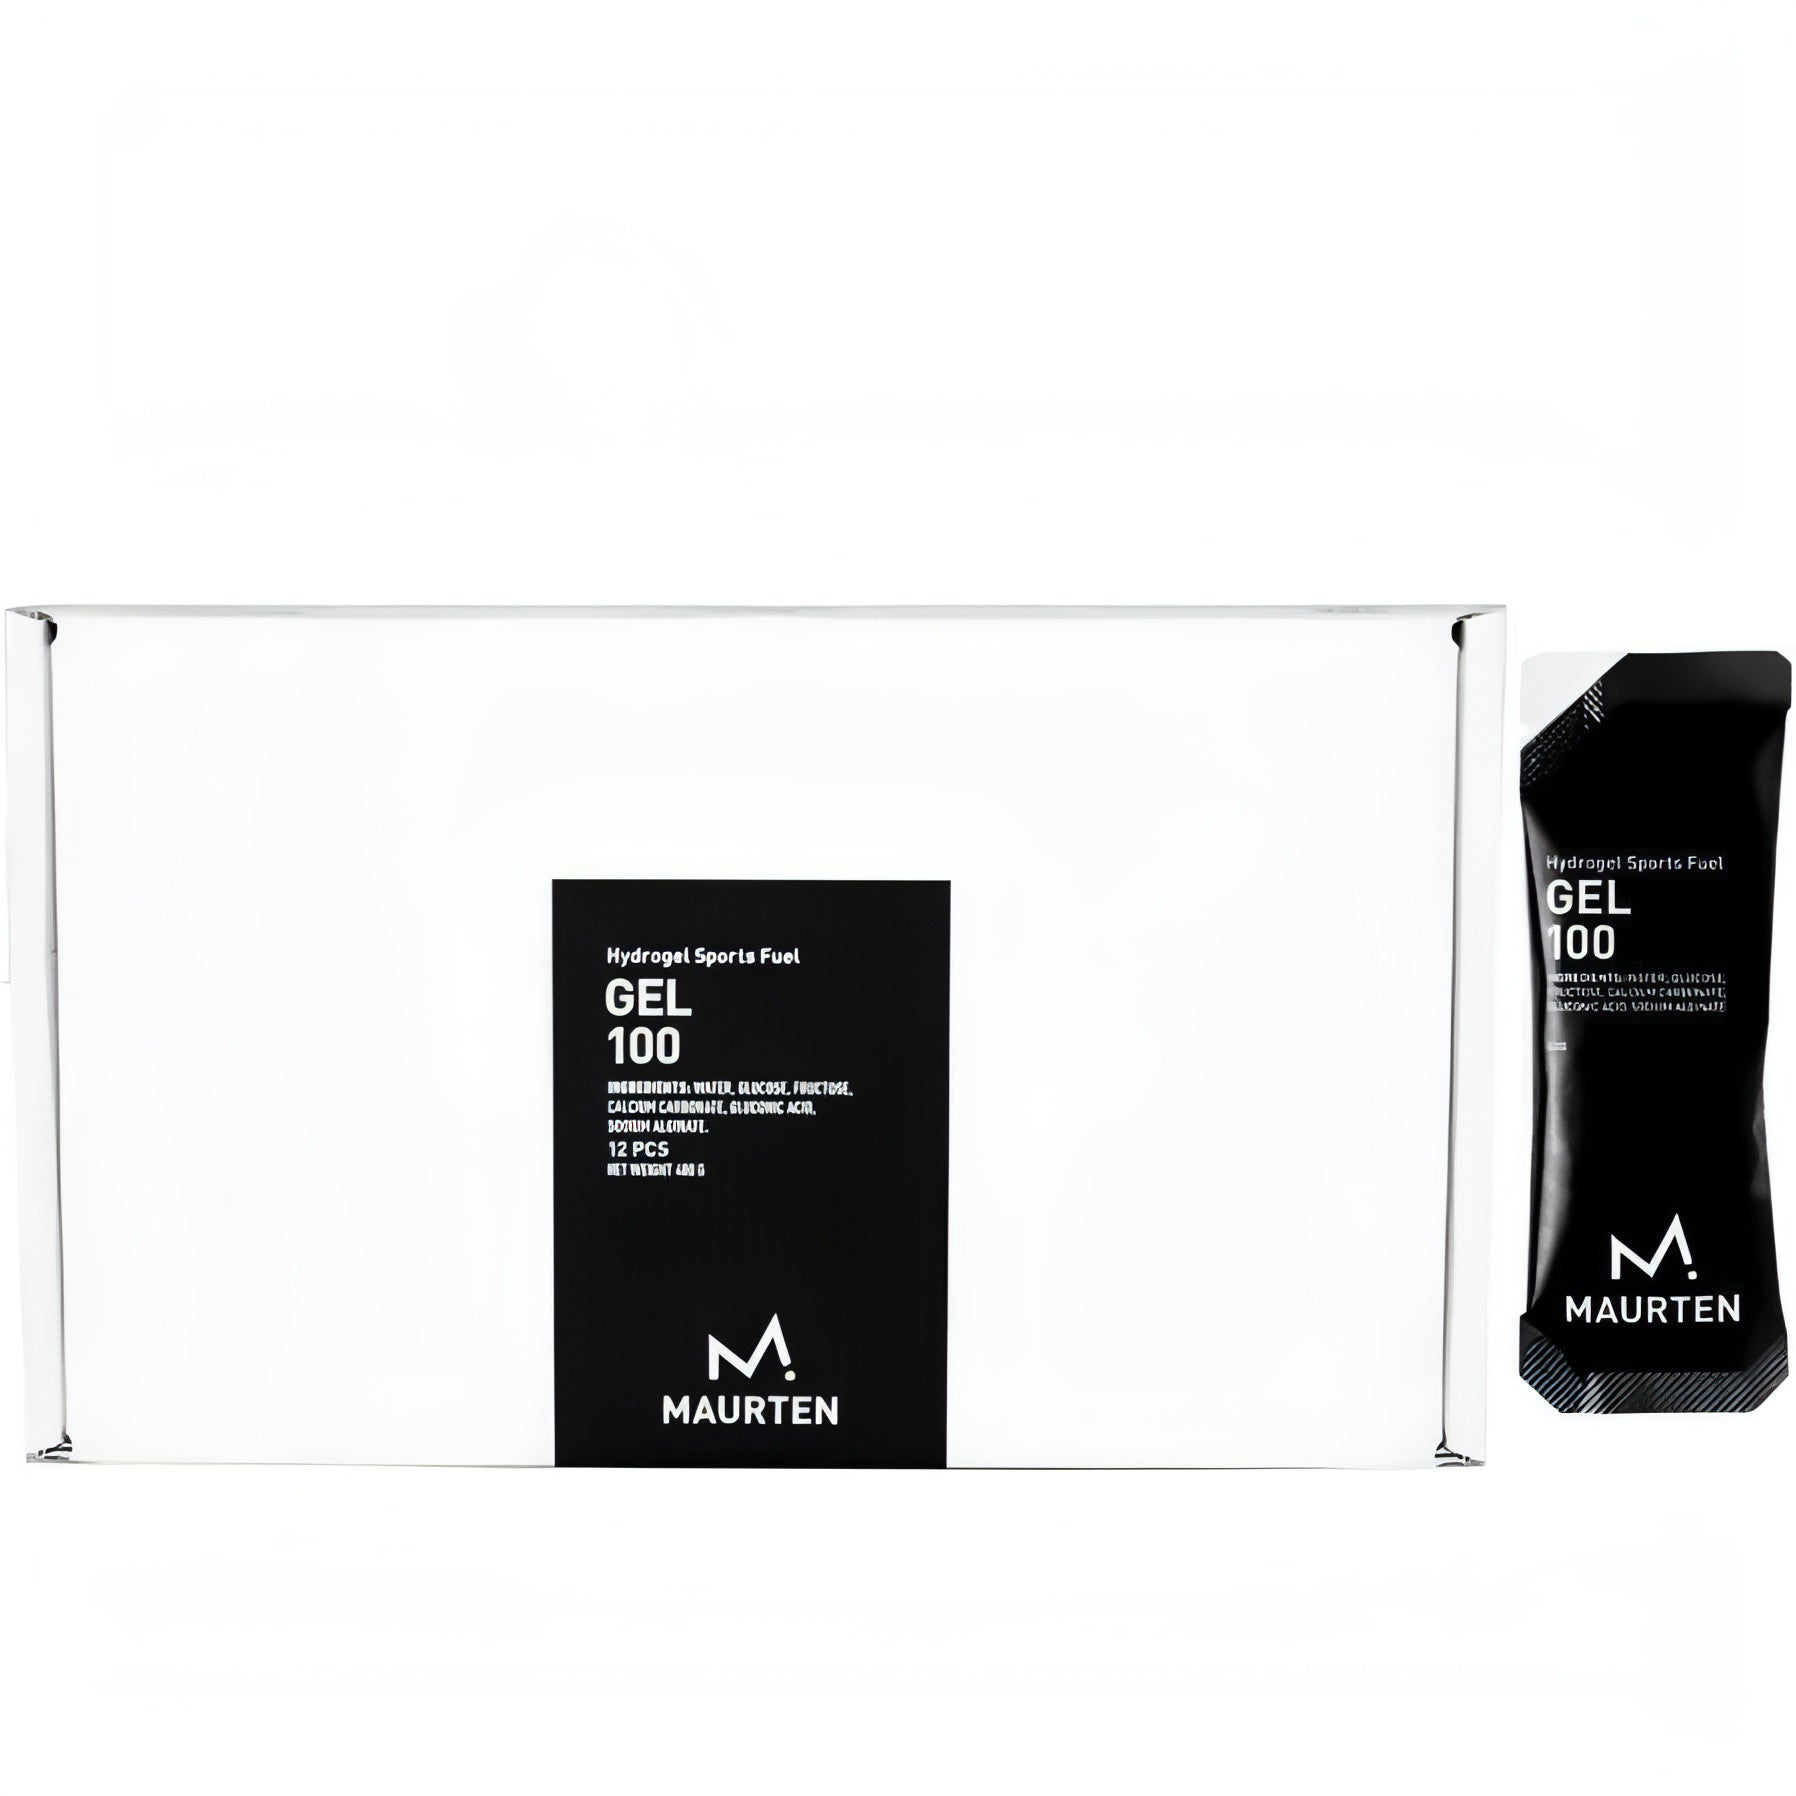 Maurten Energy Gel 100 40g (Box Of 12) 7350008410138 - Start Fitness